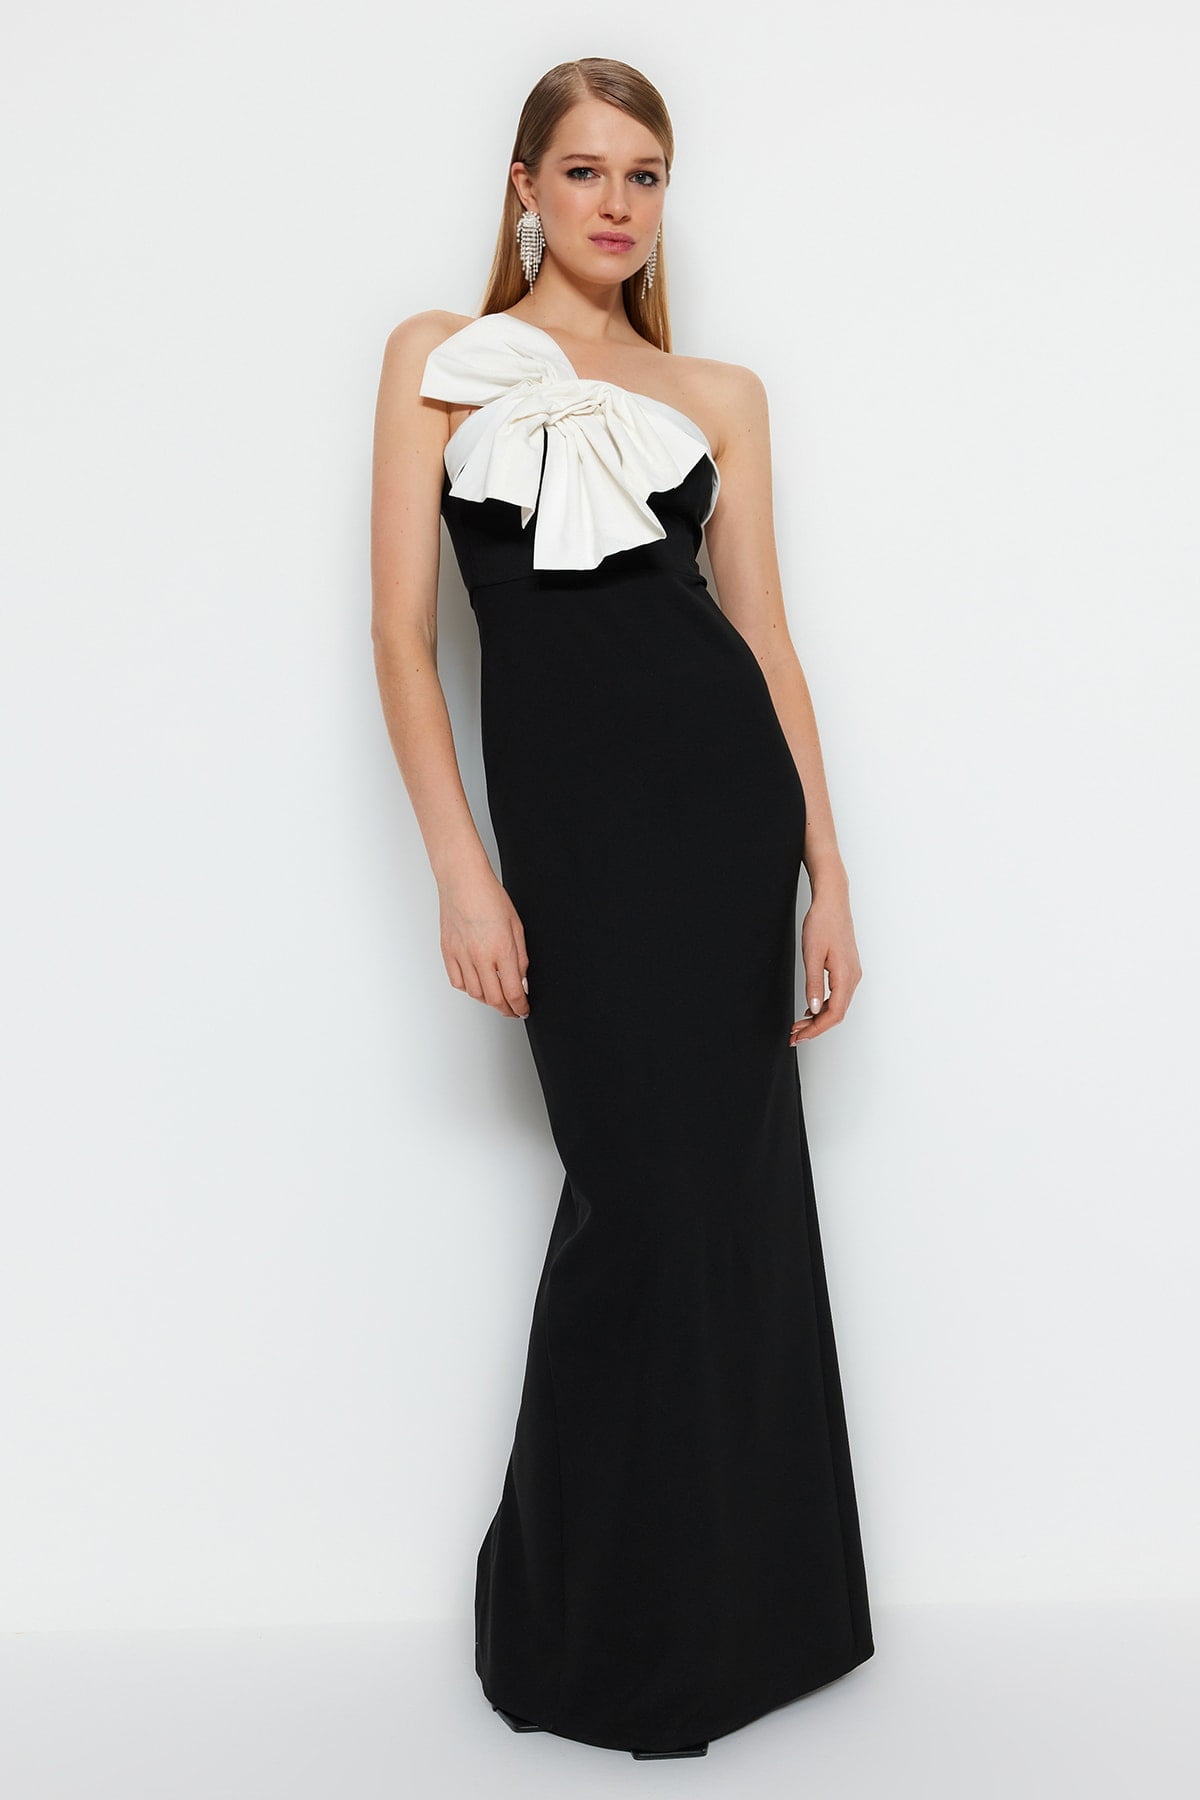 Elegant Formal Dresses for Women - Fancy Evening Gowns | Tobi